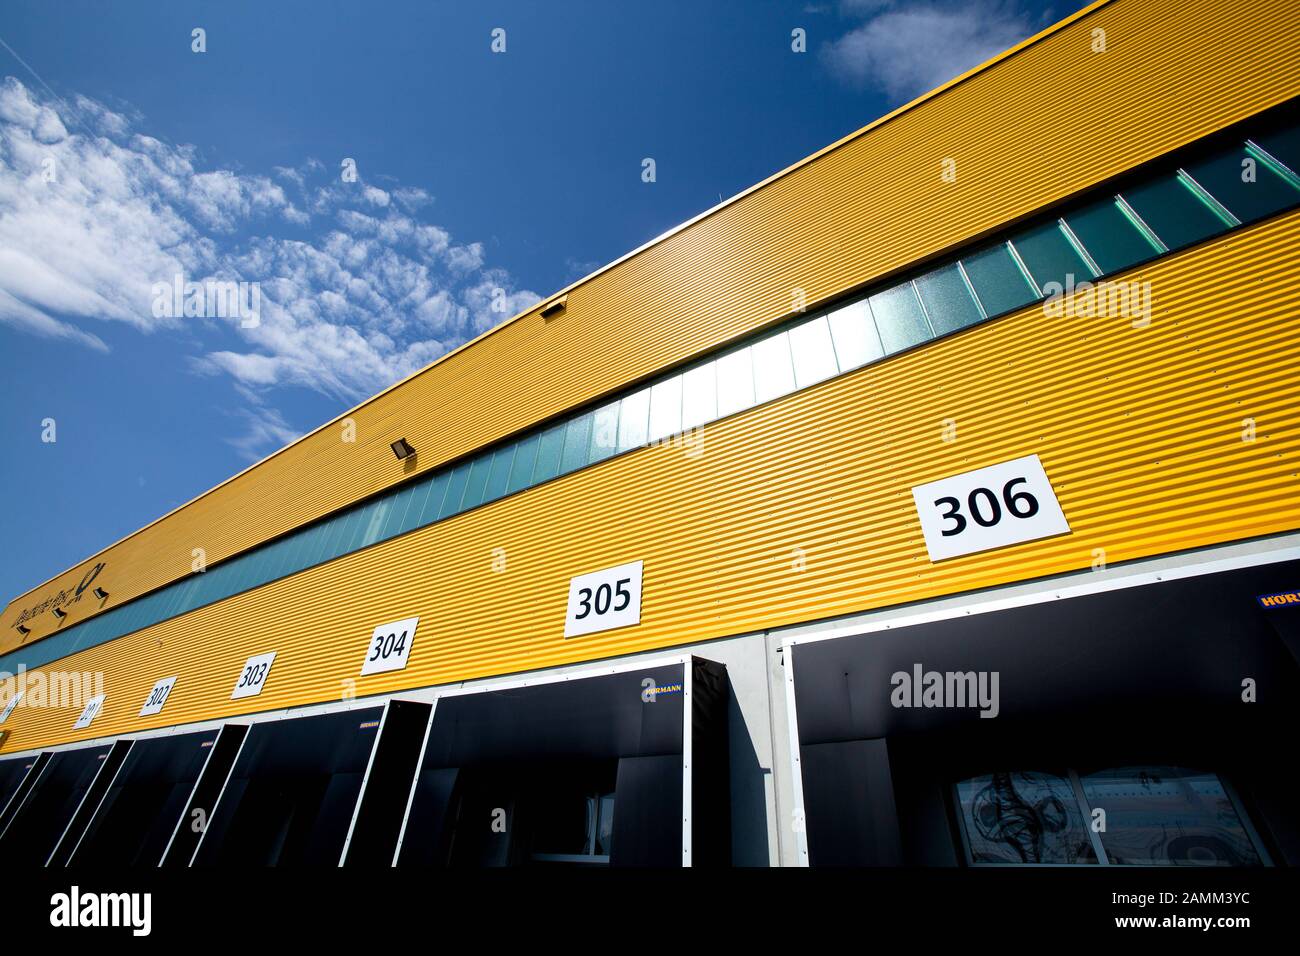 Das neue Distributionszentrum von DHL in München-Neuhausen. Hier sind die Nummern der Ladeschlösser. [Automatisierte Übersetzung] Stockfoto